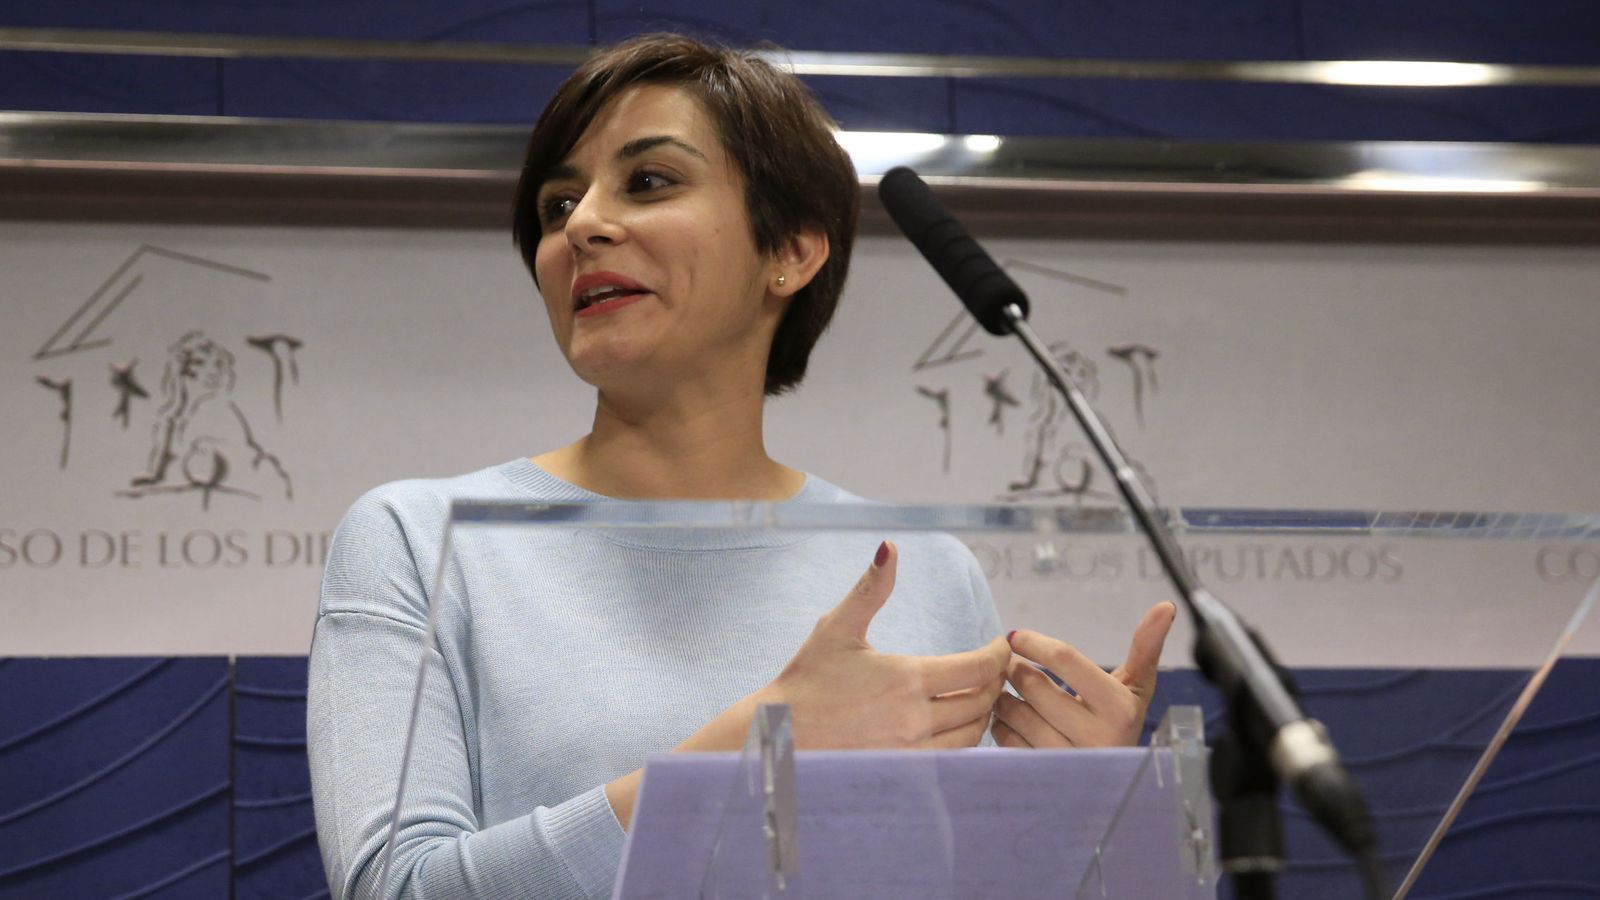 Foto: La diputada socialista Isabel Rodríguez durante una comparecencia en el Congreso. (EFE)